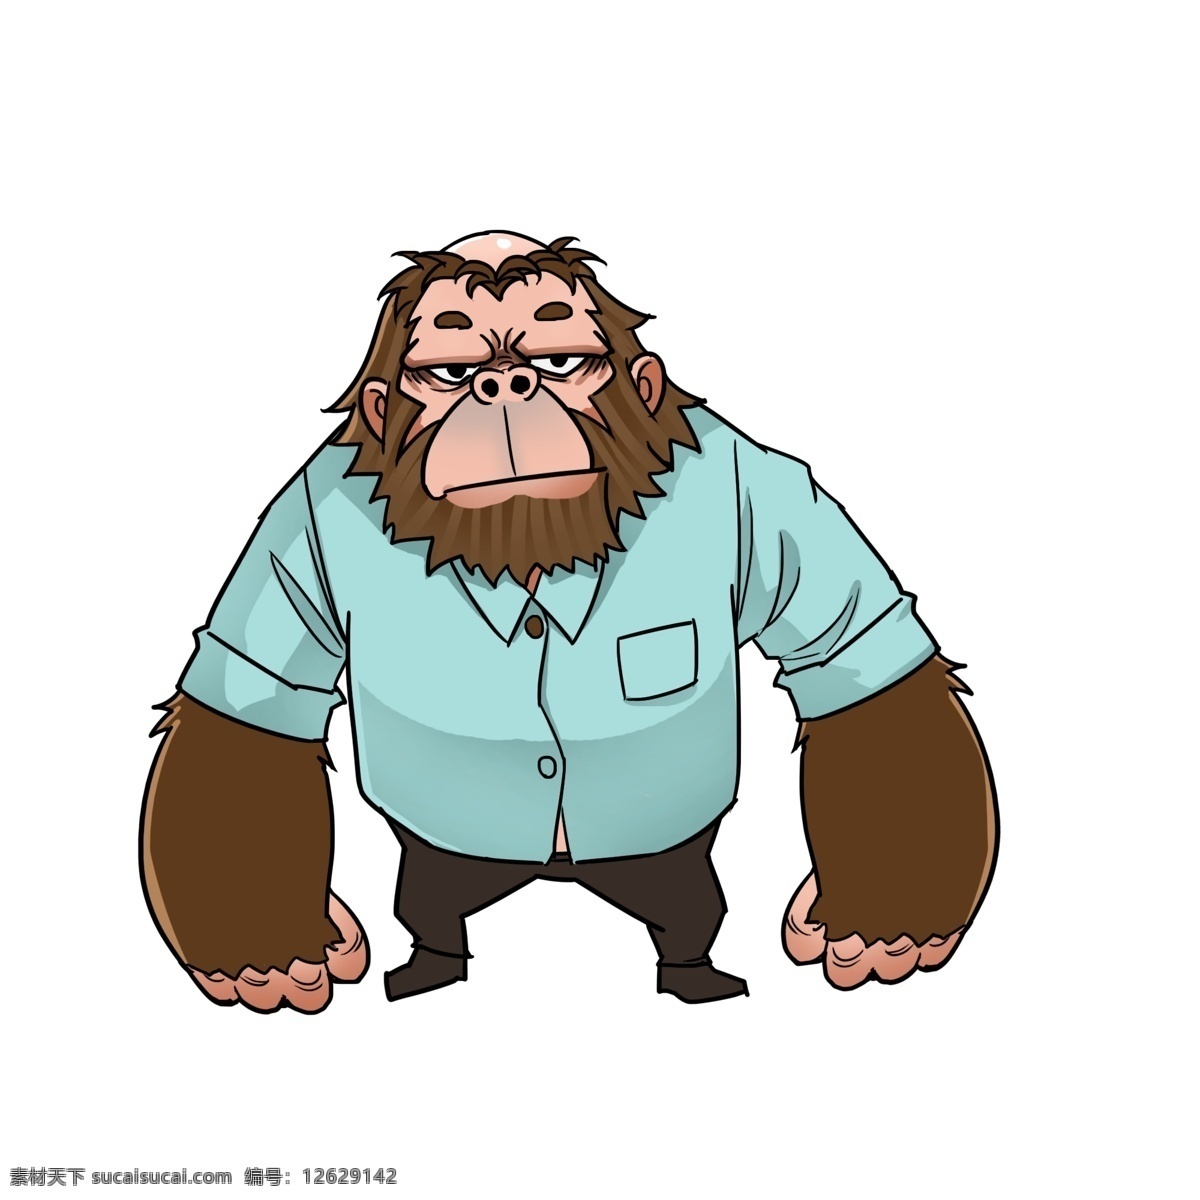 元素 秃头 动物 拟人 大猩猩 插画 手绘 卡通